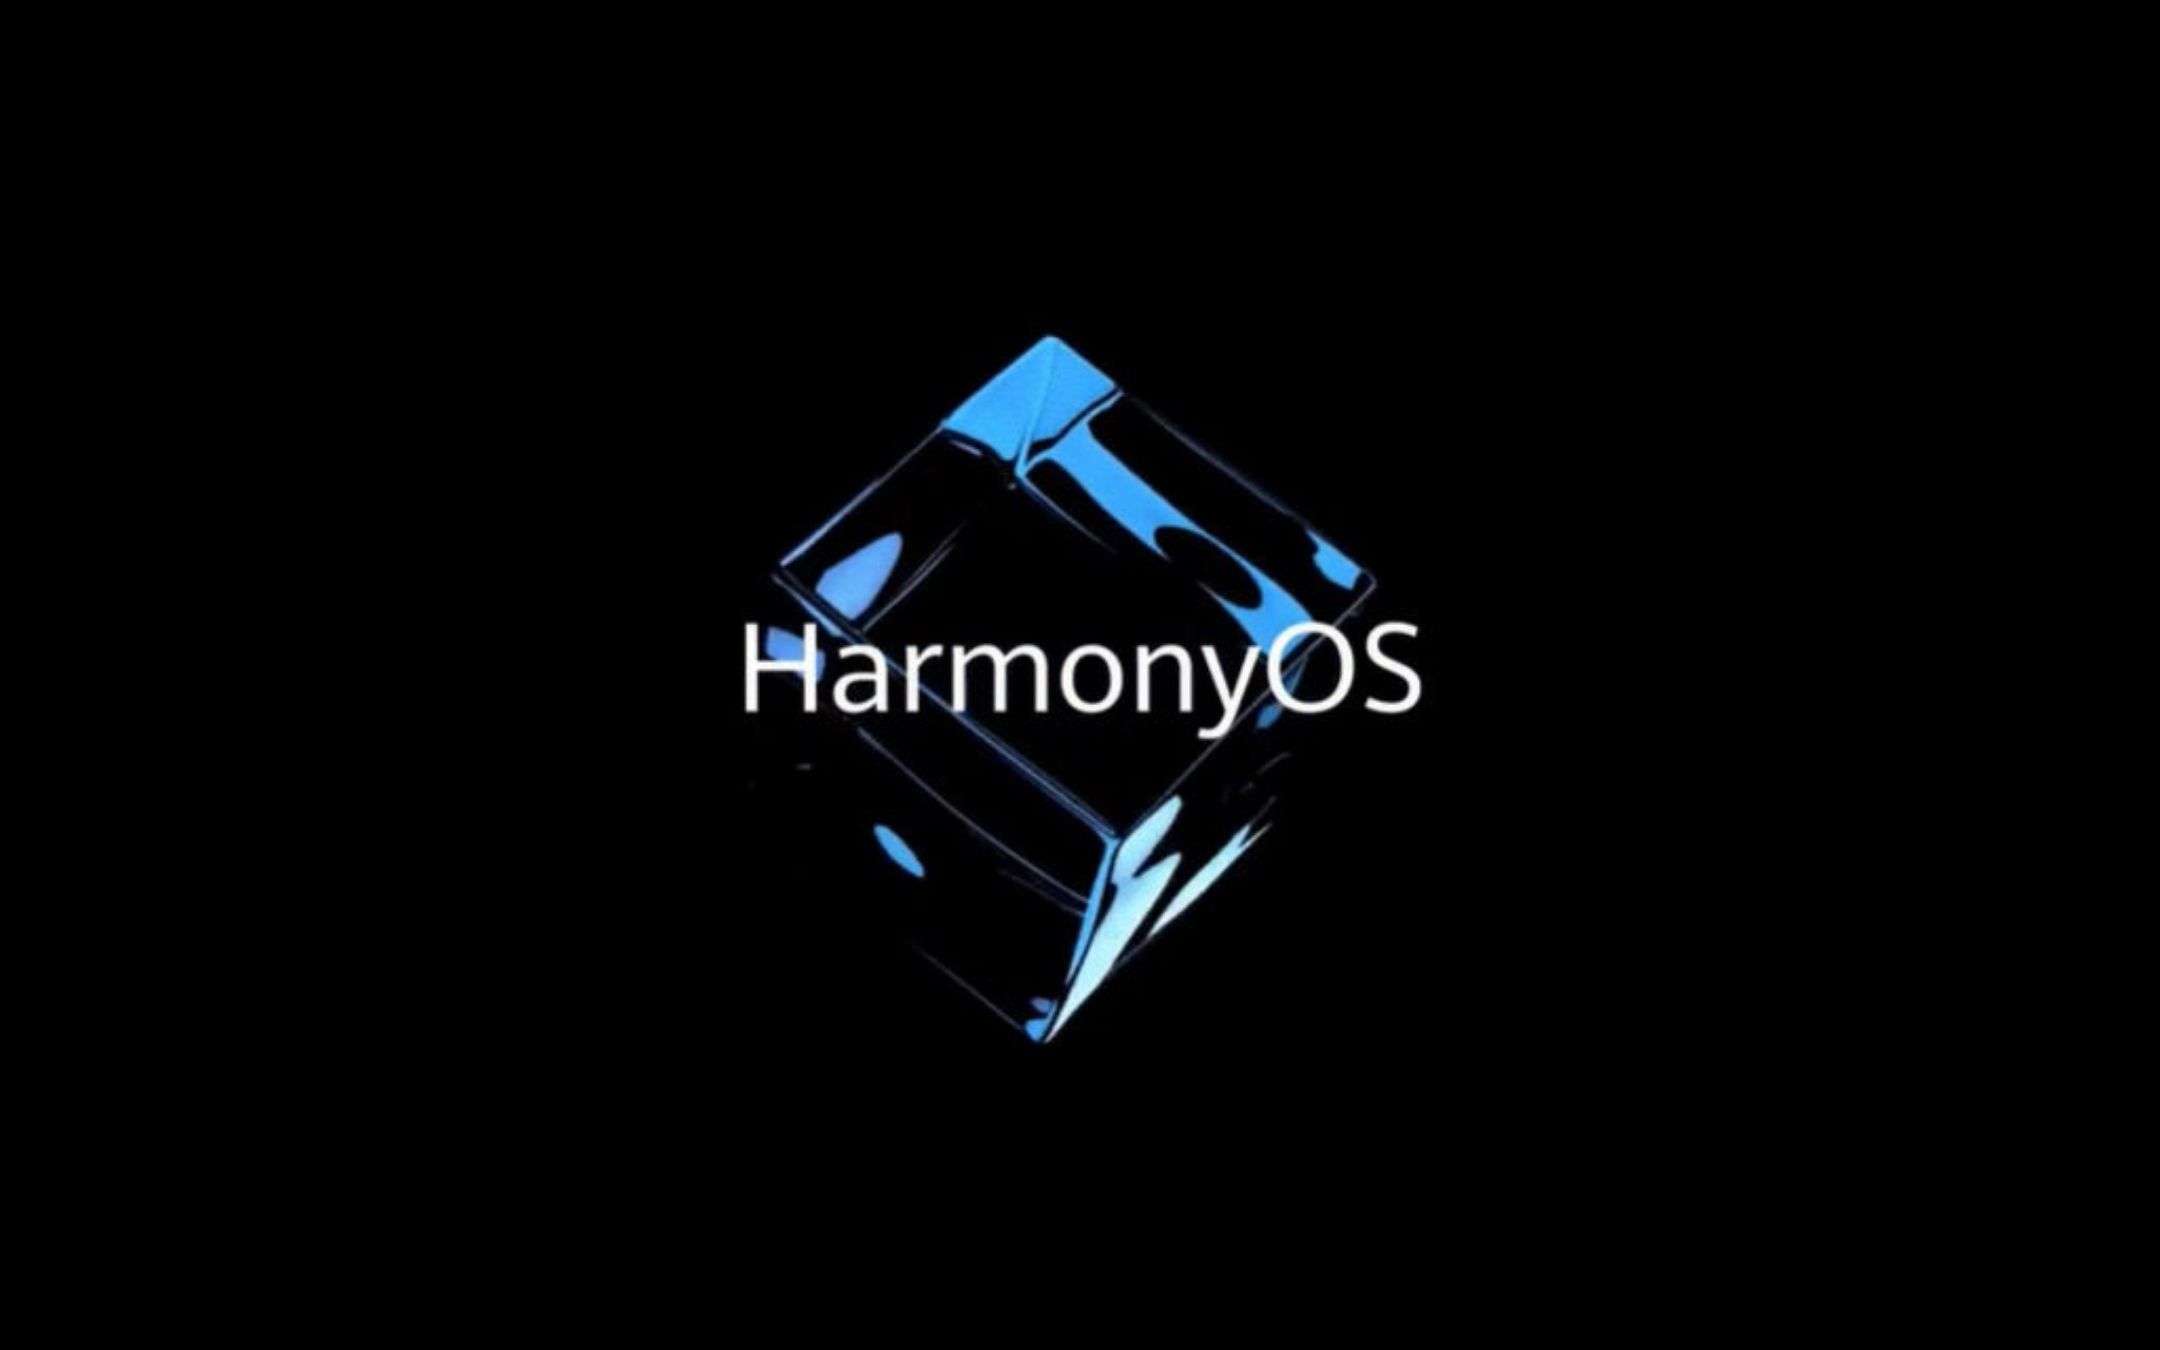 HarmonyOS arriva in Europa nel 2022 (aggiornamento)